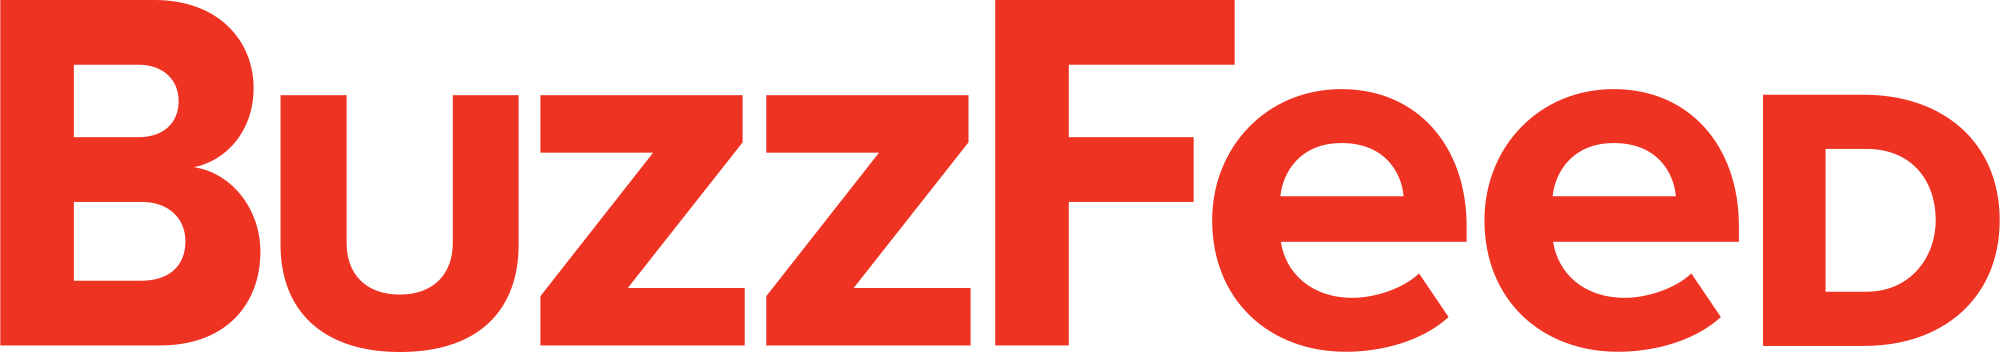 BuzzFeed Logo - File:BuzzFeed.svg - Wikimedia Commons